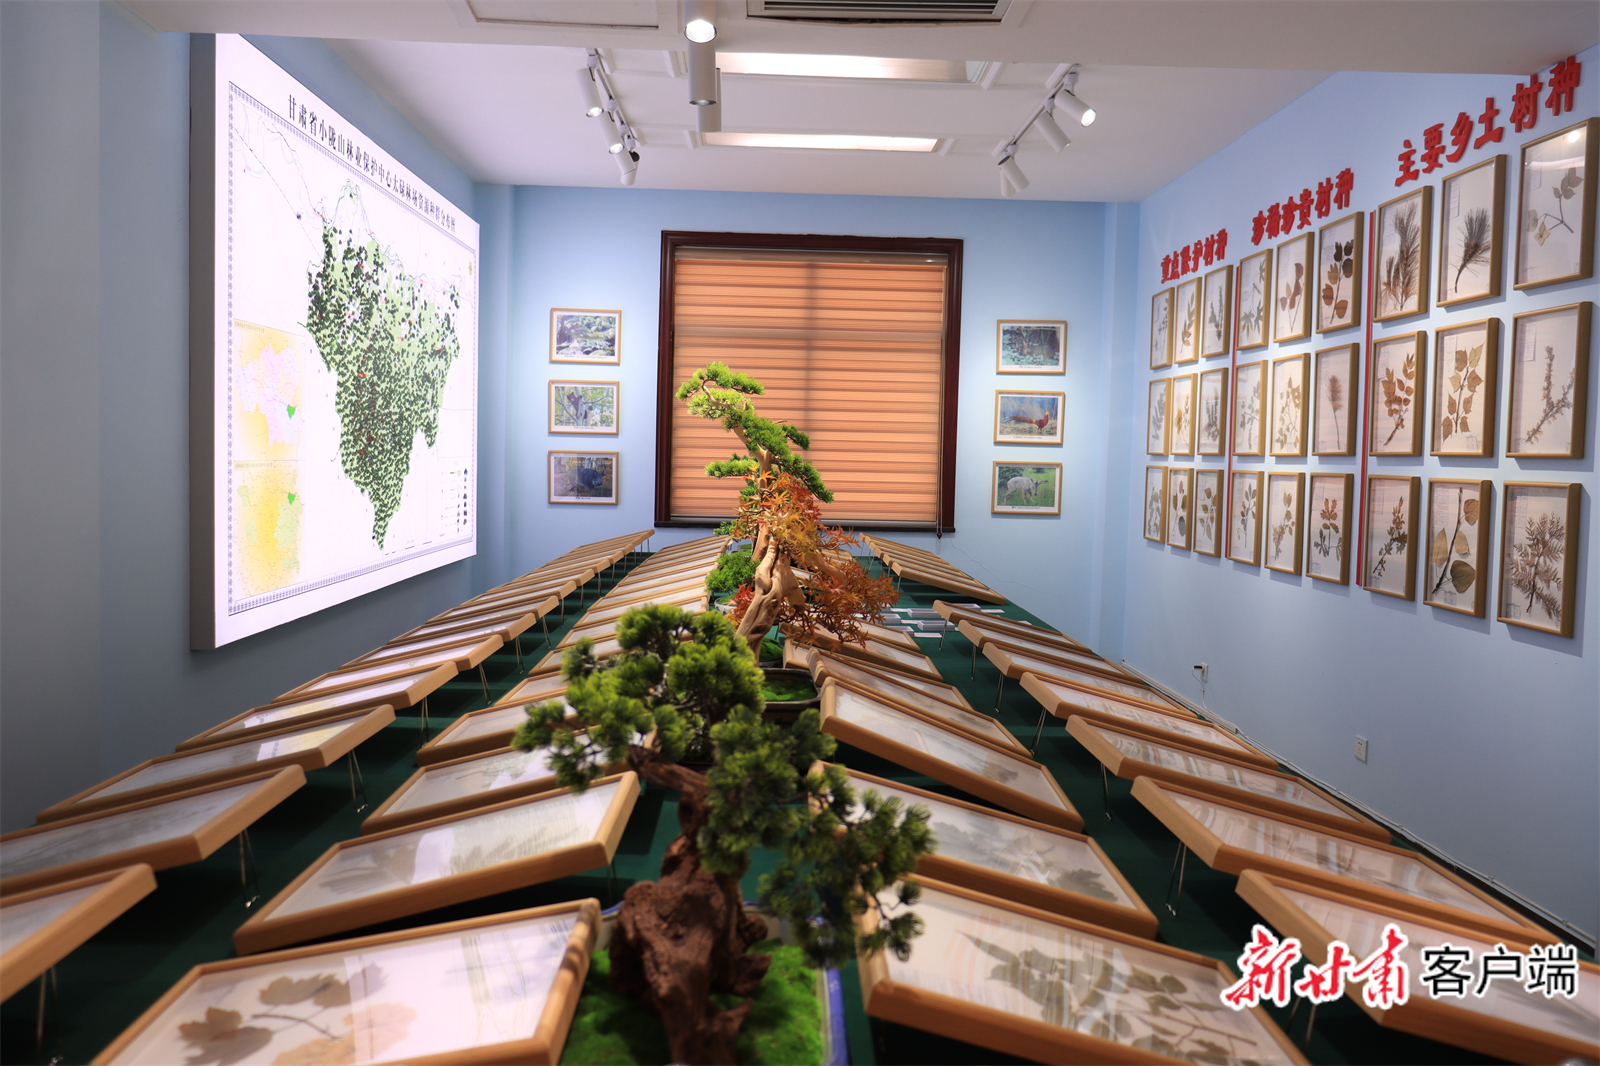 林场用以留存珍贵树种资料的展览室　新甘肃·甘肃日报通讯员　姜彬　提供